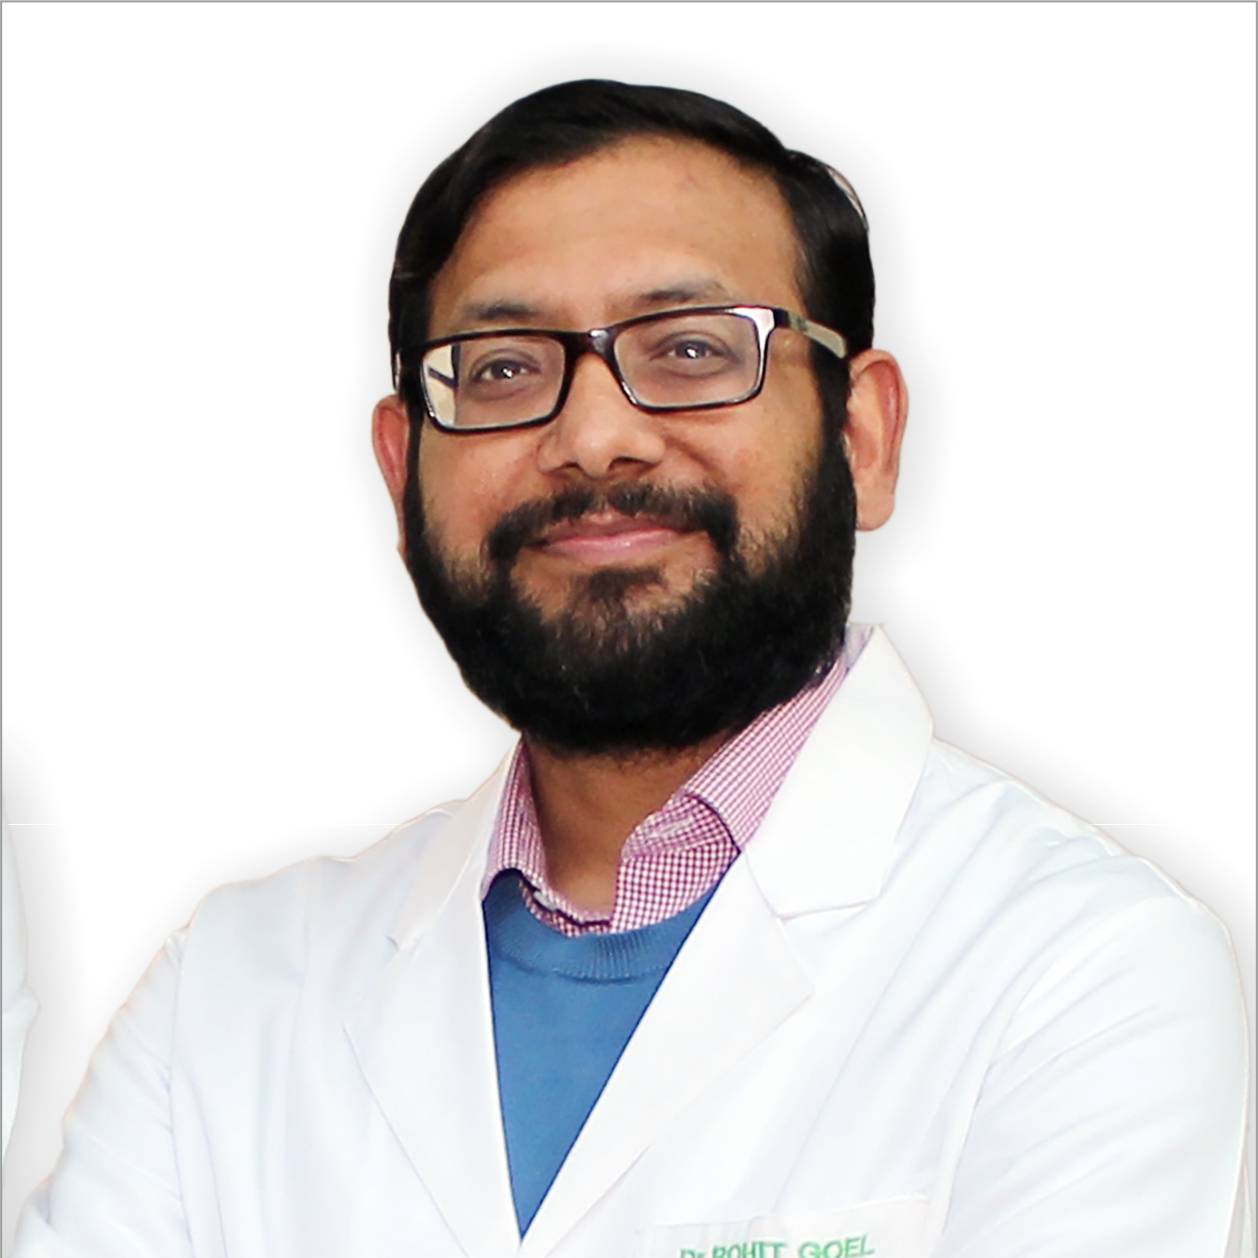 Rohit Goel博士